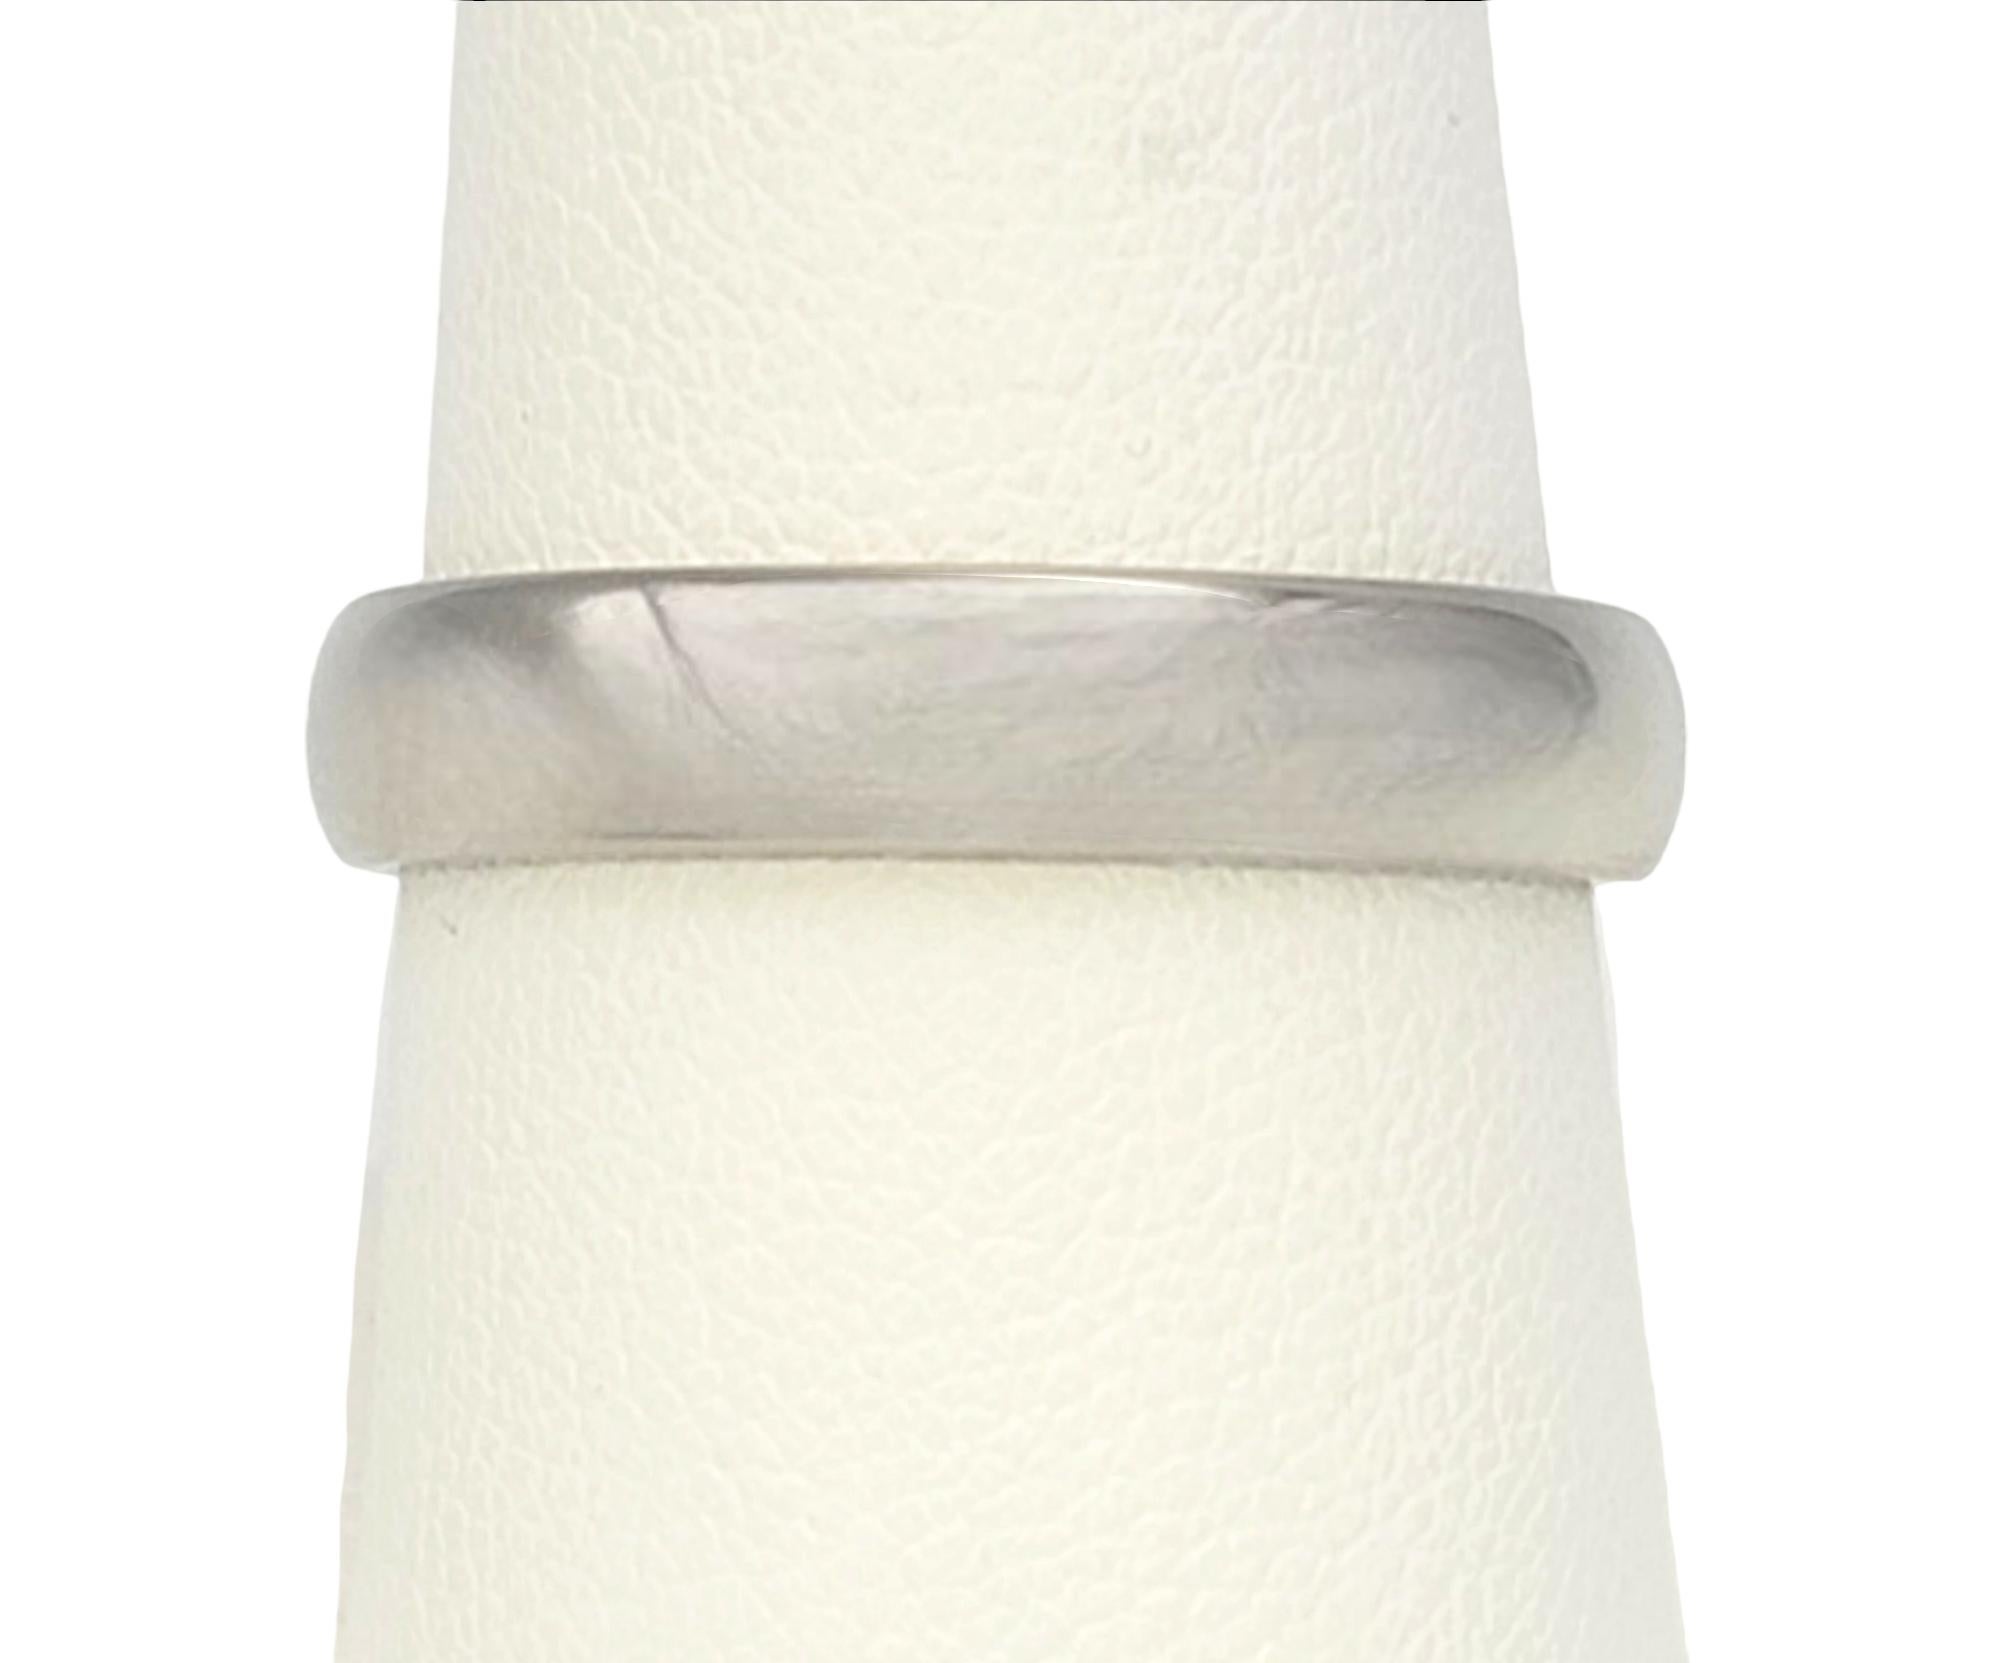 Tiffany & Co. Tiffany 'Forever' Polished Platinum Unisex Wedding Band Ring For Sale 6